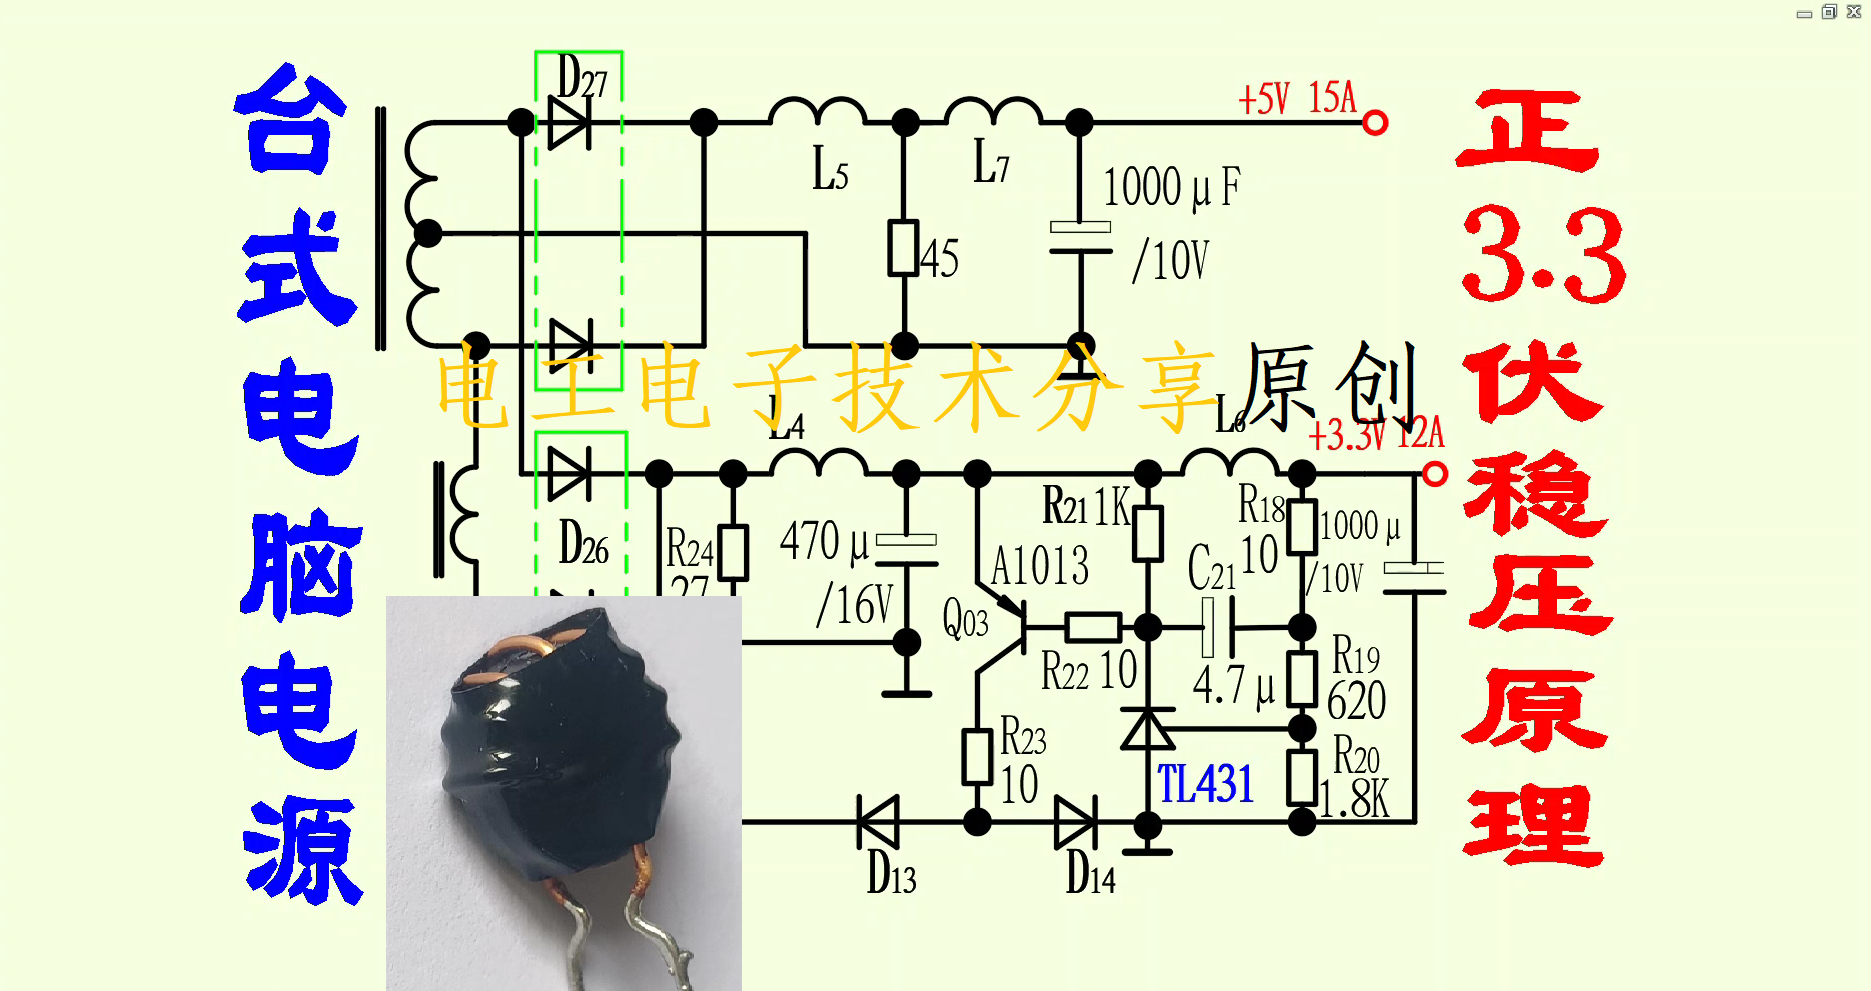 可飽和電感在電腦ATX電源＋3.3V穩壓電路中的作用分析